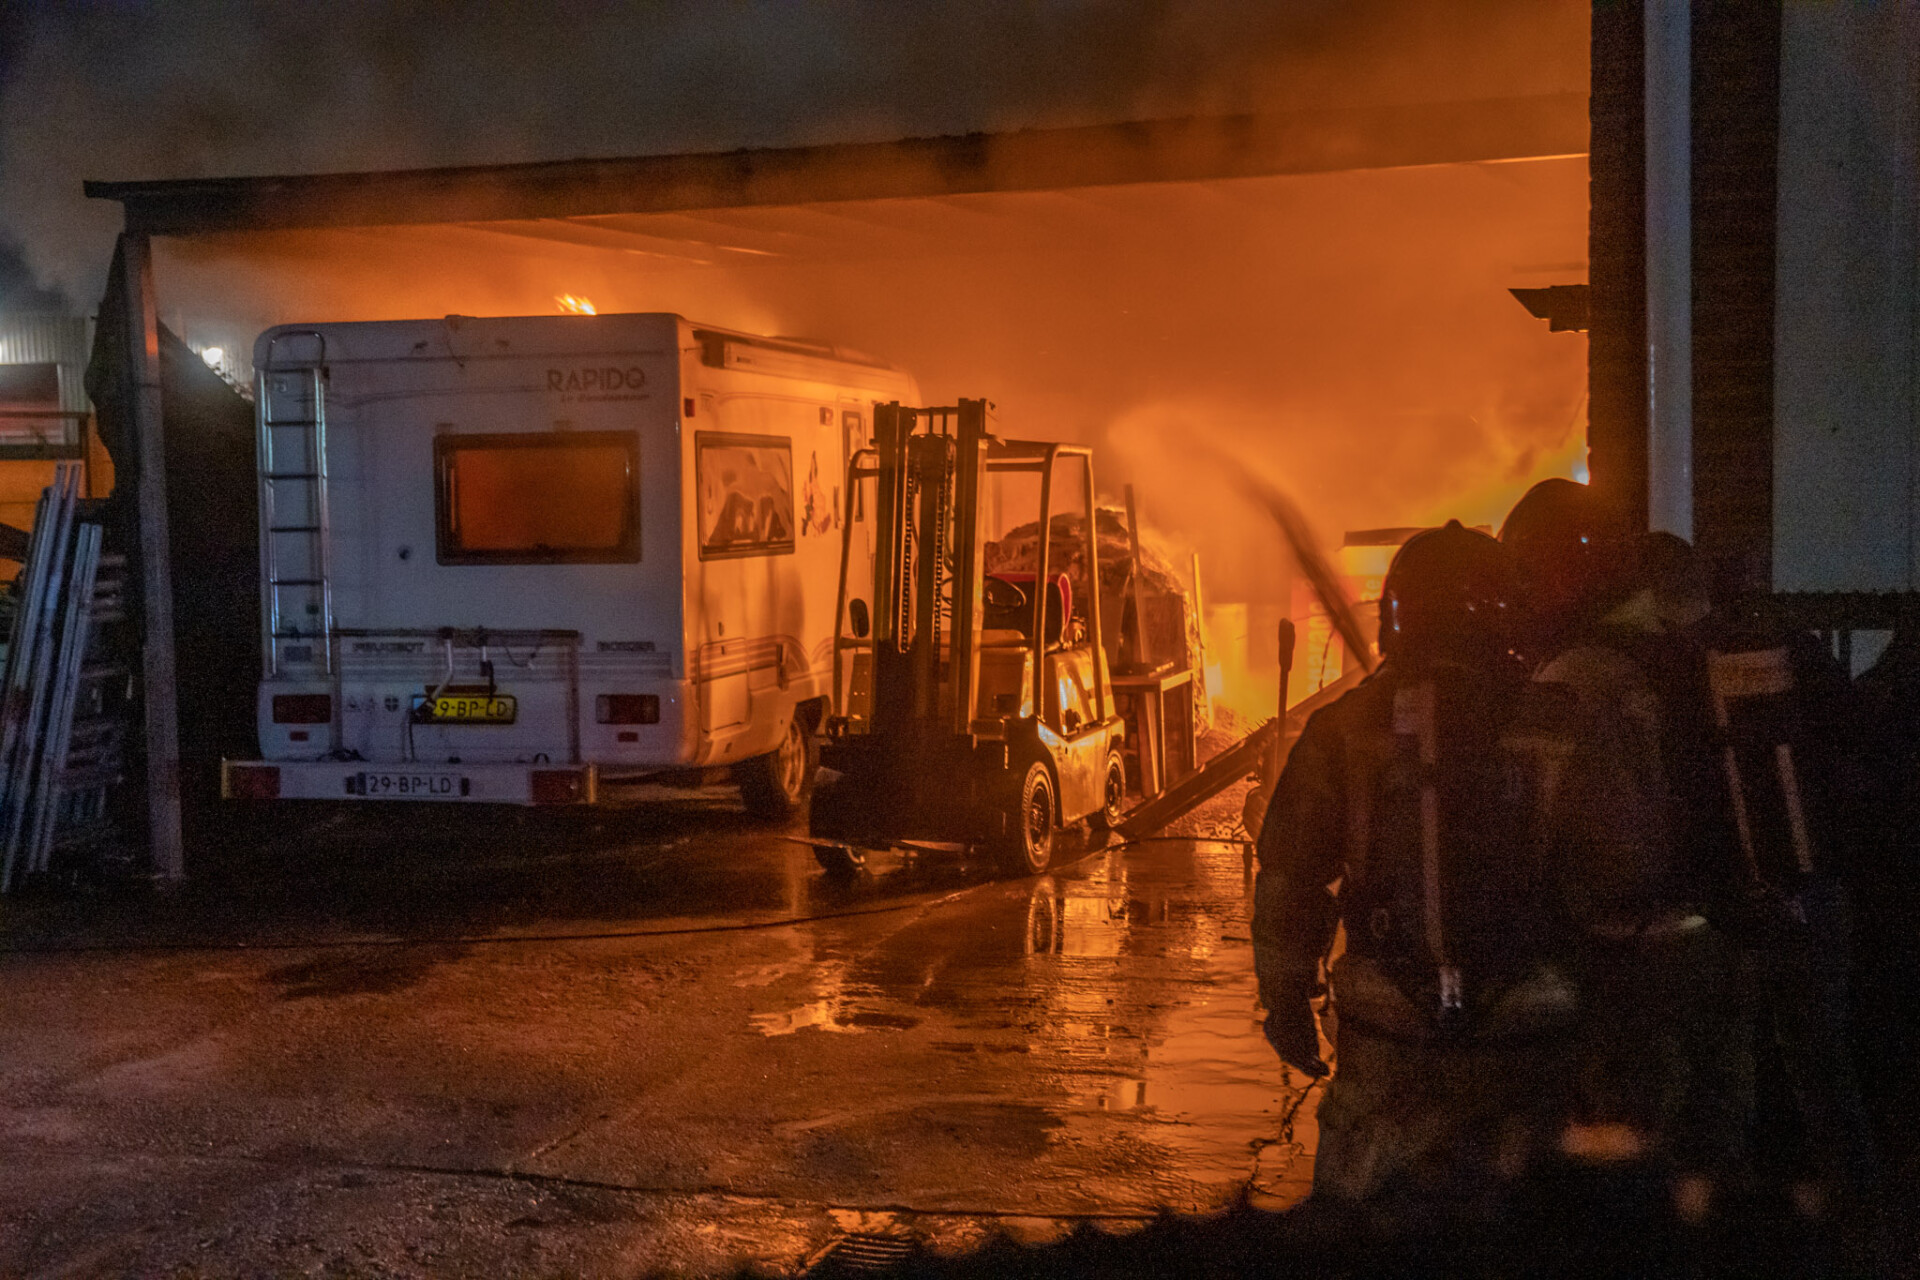 Flinke brand bij garagebedrijf in Geldrop